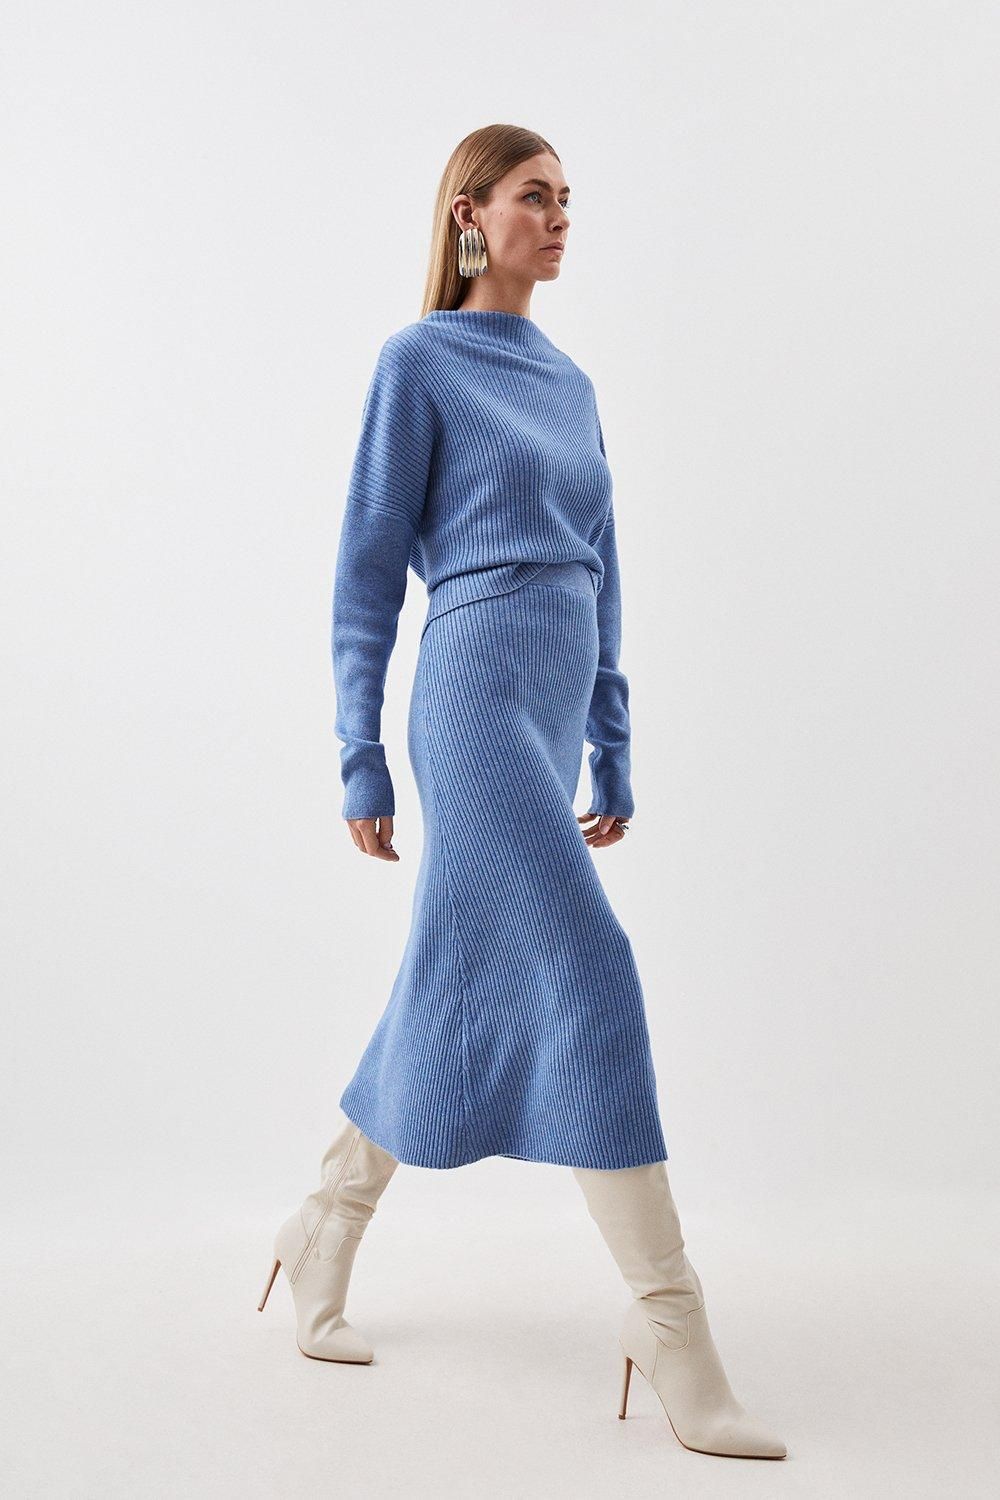 Cashmere Wool Knit Skirt | Karen Millen UK + IE + DE + NL